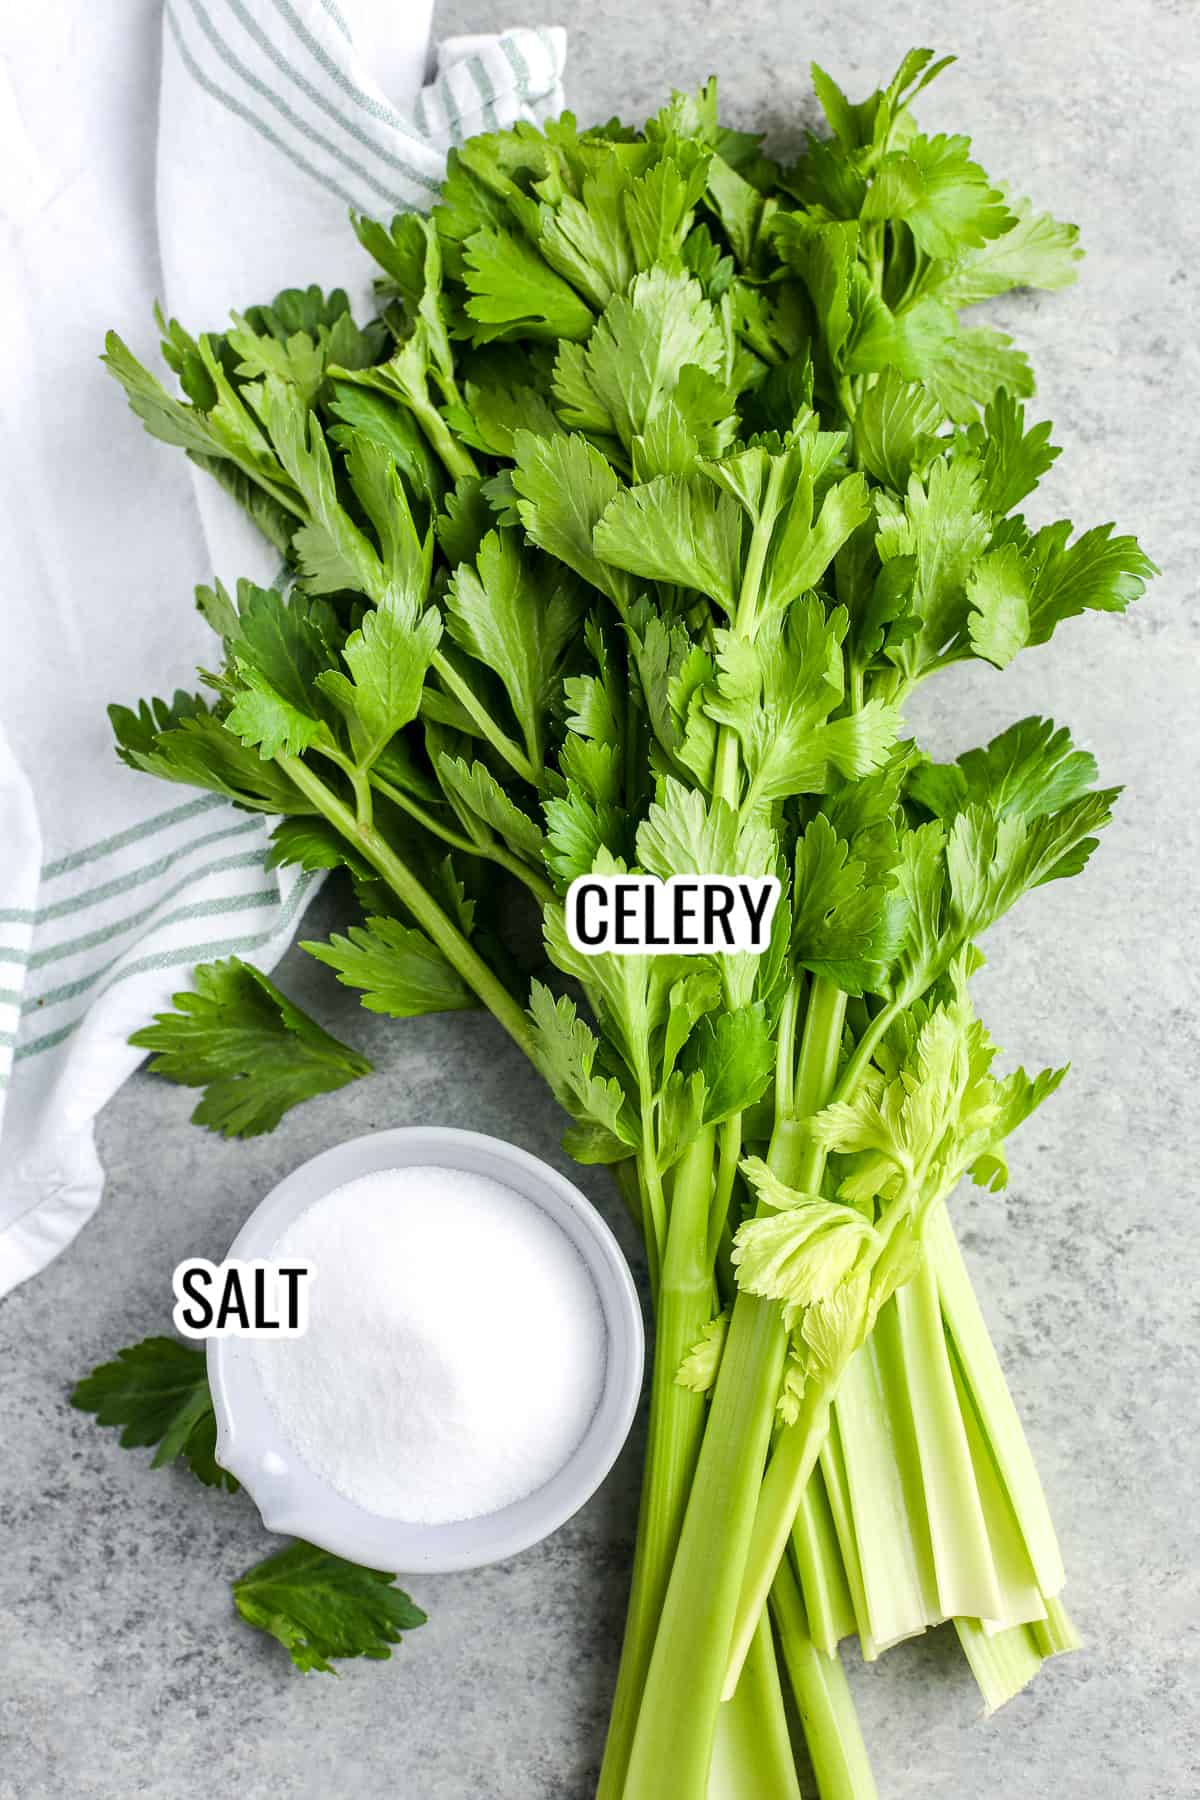 ingredients assembled to make celery salt, including celery and salt